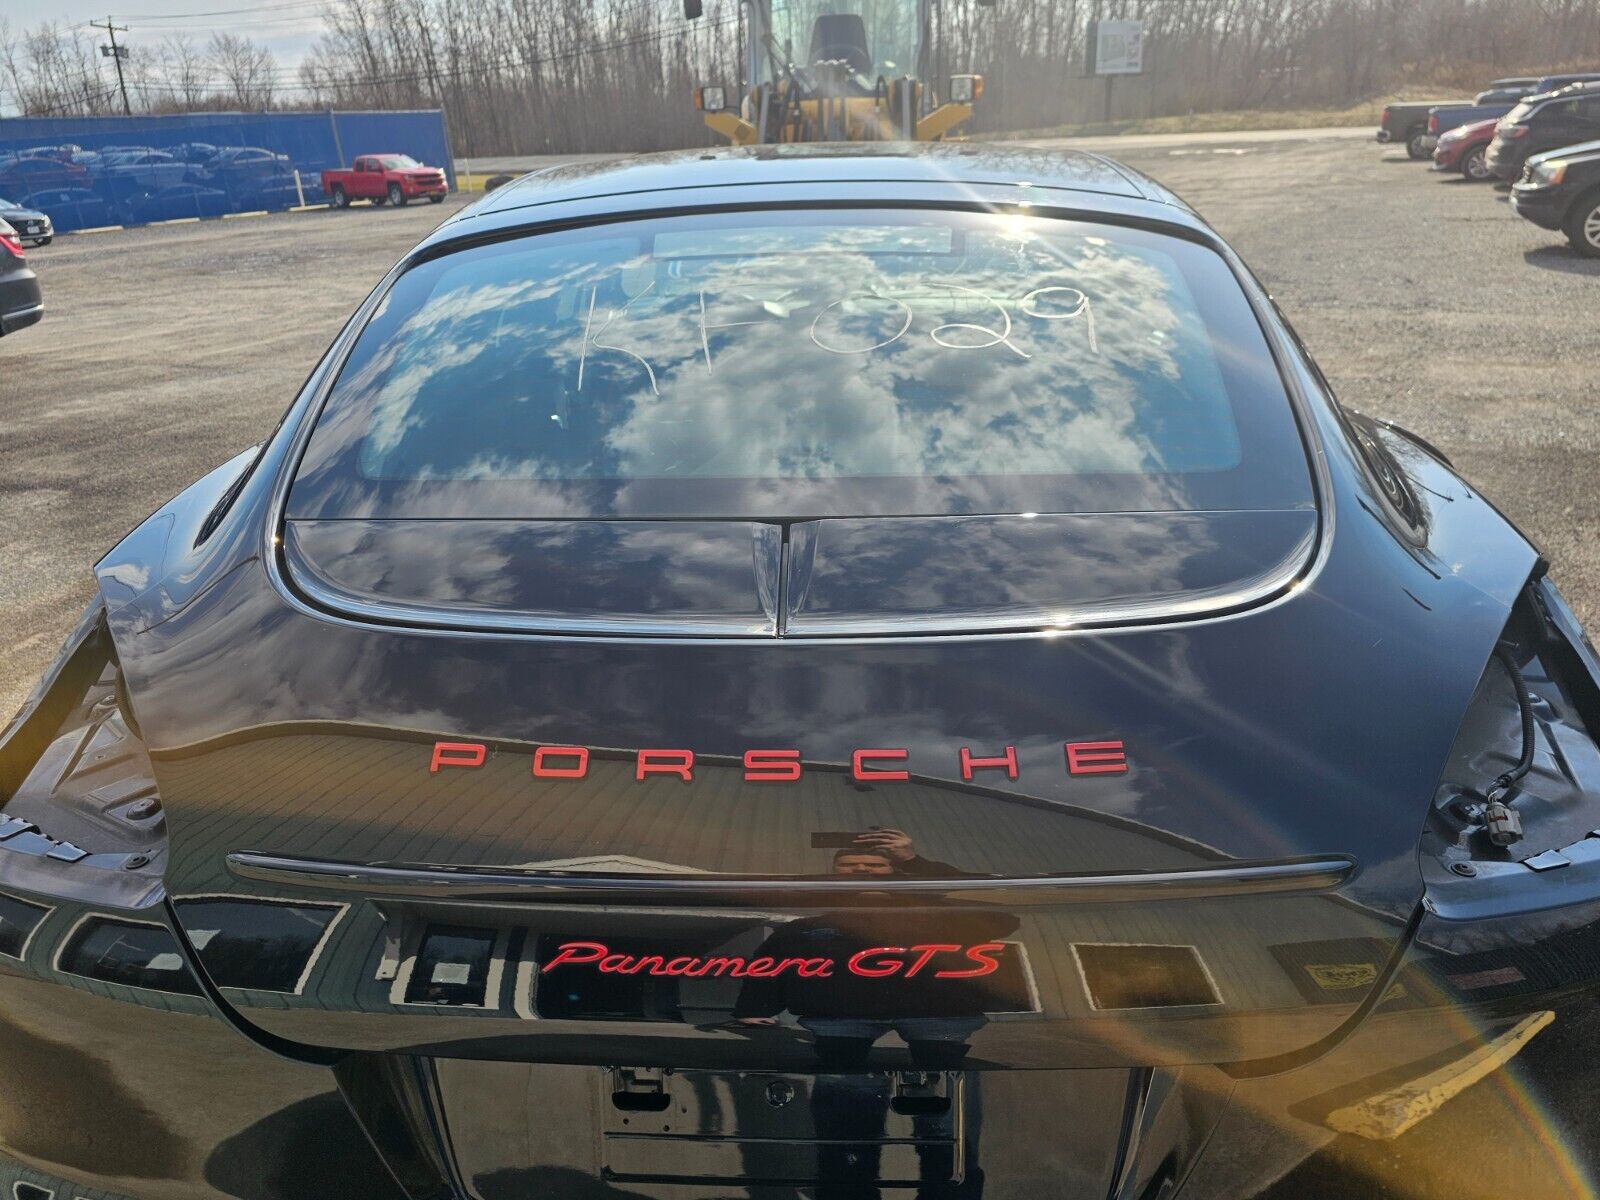 10-13 Porsche Panamera GTS Black A1/041 Rear Power Lift Gate 970-512-011-04